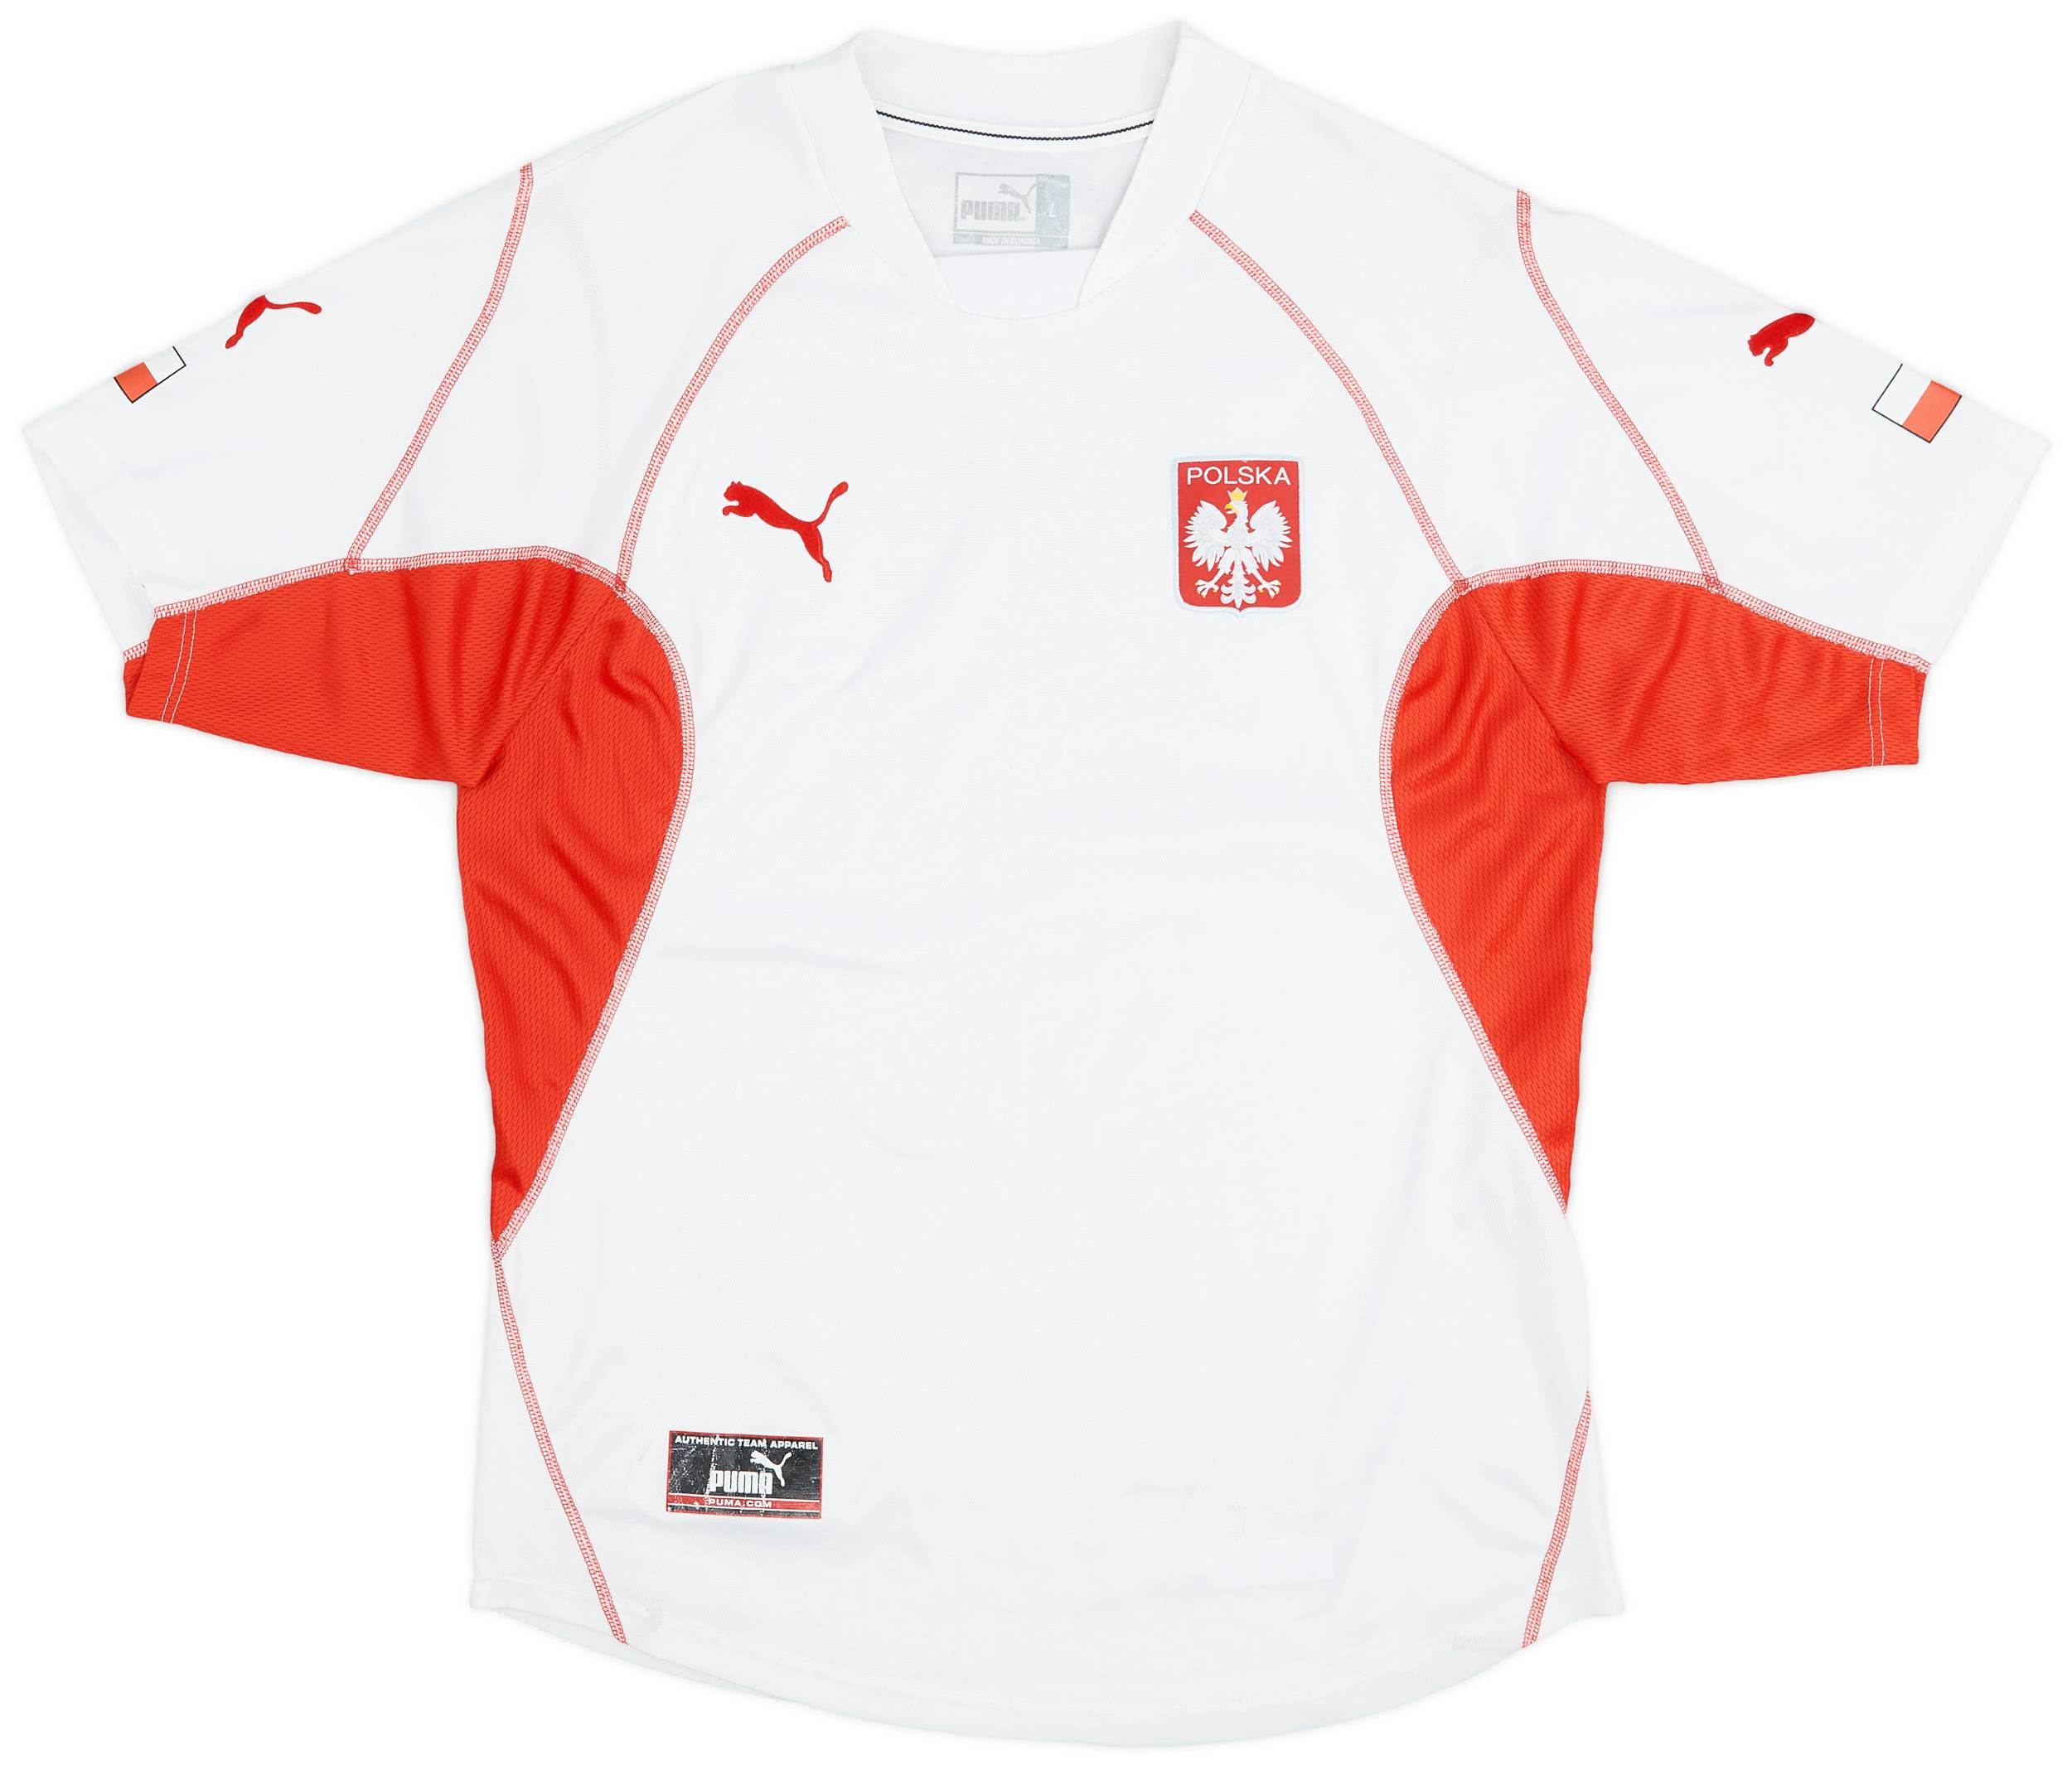 2004-06 Poland Home Shirt - 8/10 - (L)